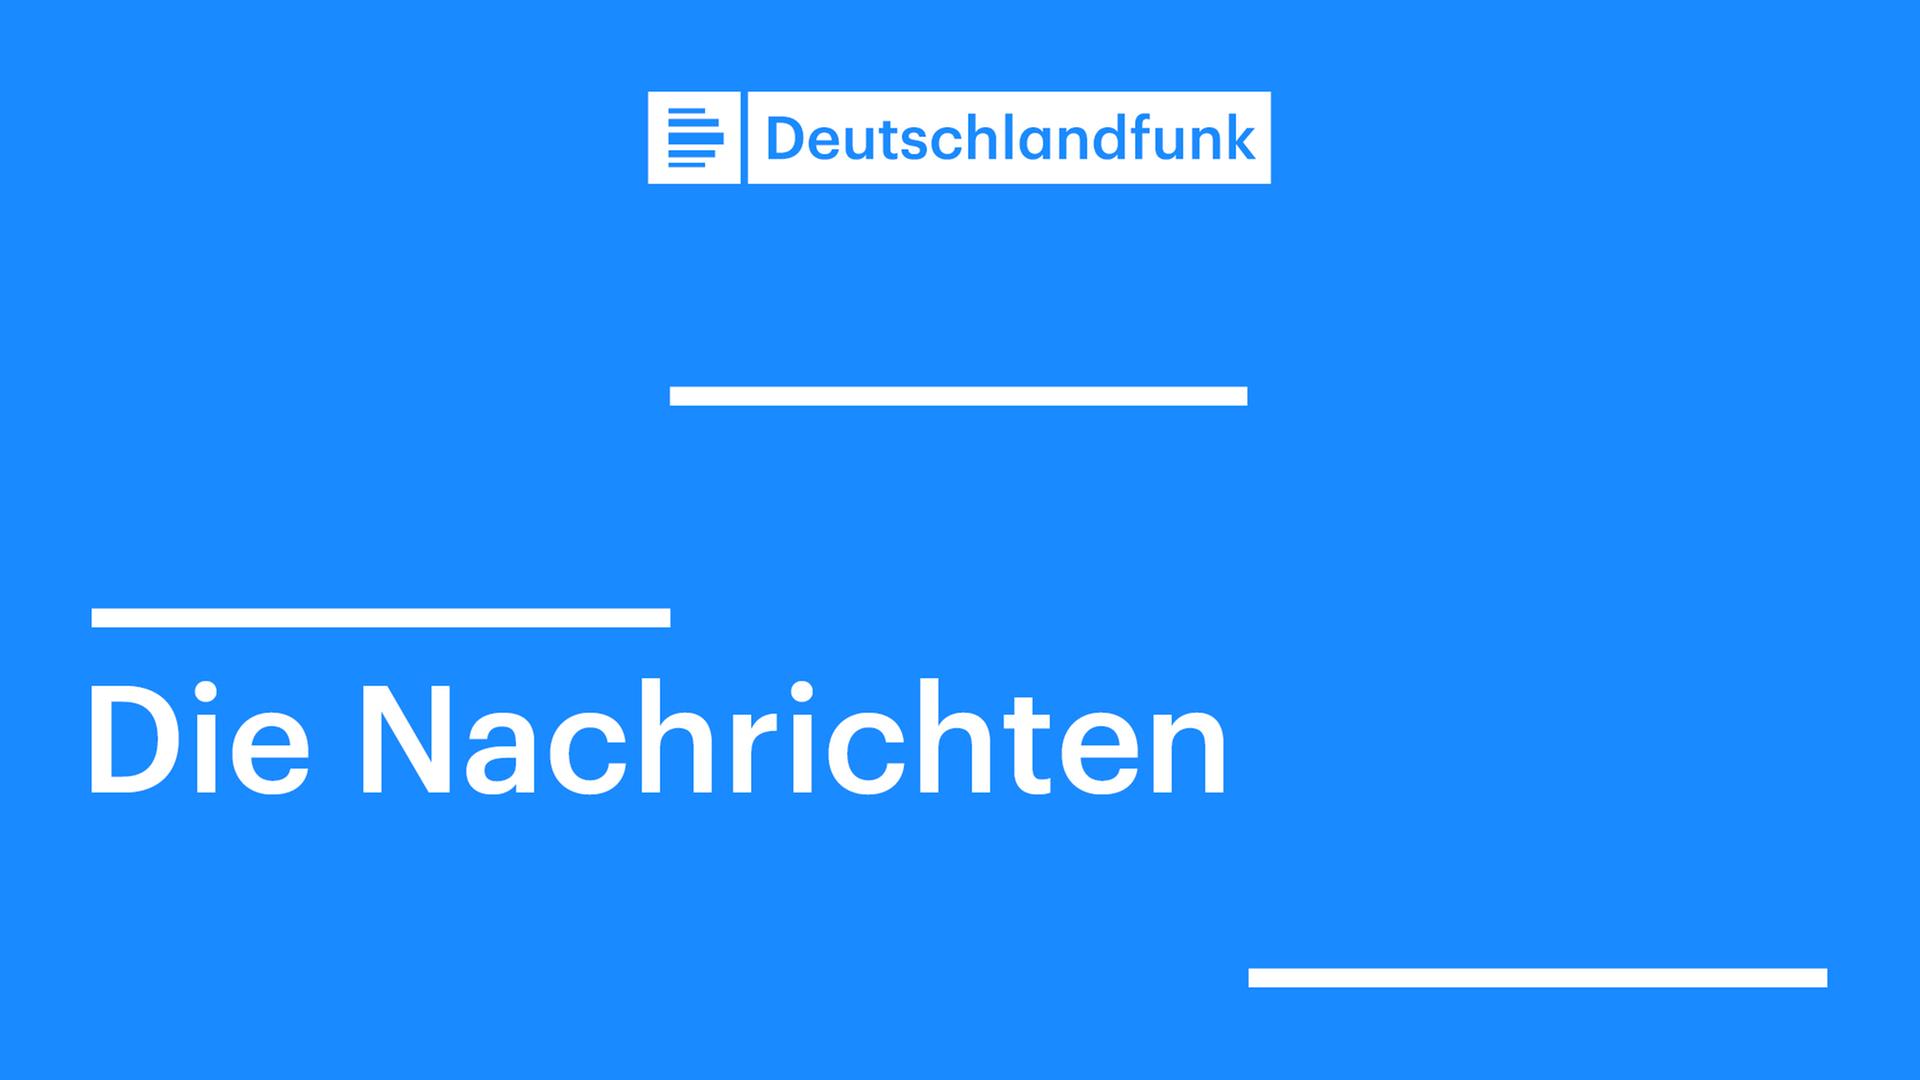 Blaues Symbolbild mit dem Logo des Deutschlandfunks und dem Zusatz "Die Nachrichten"